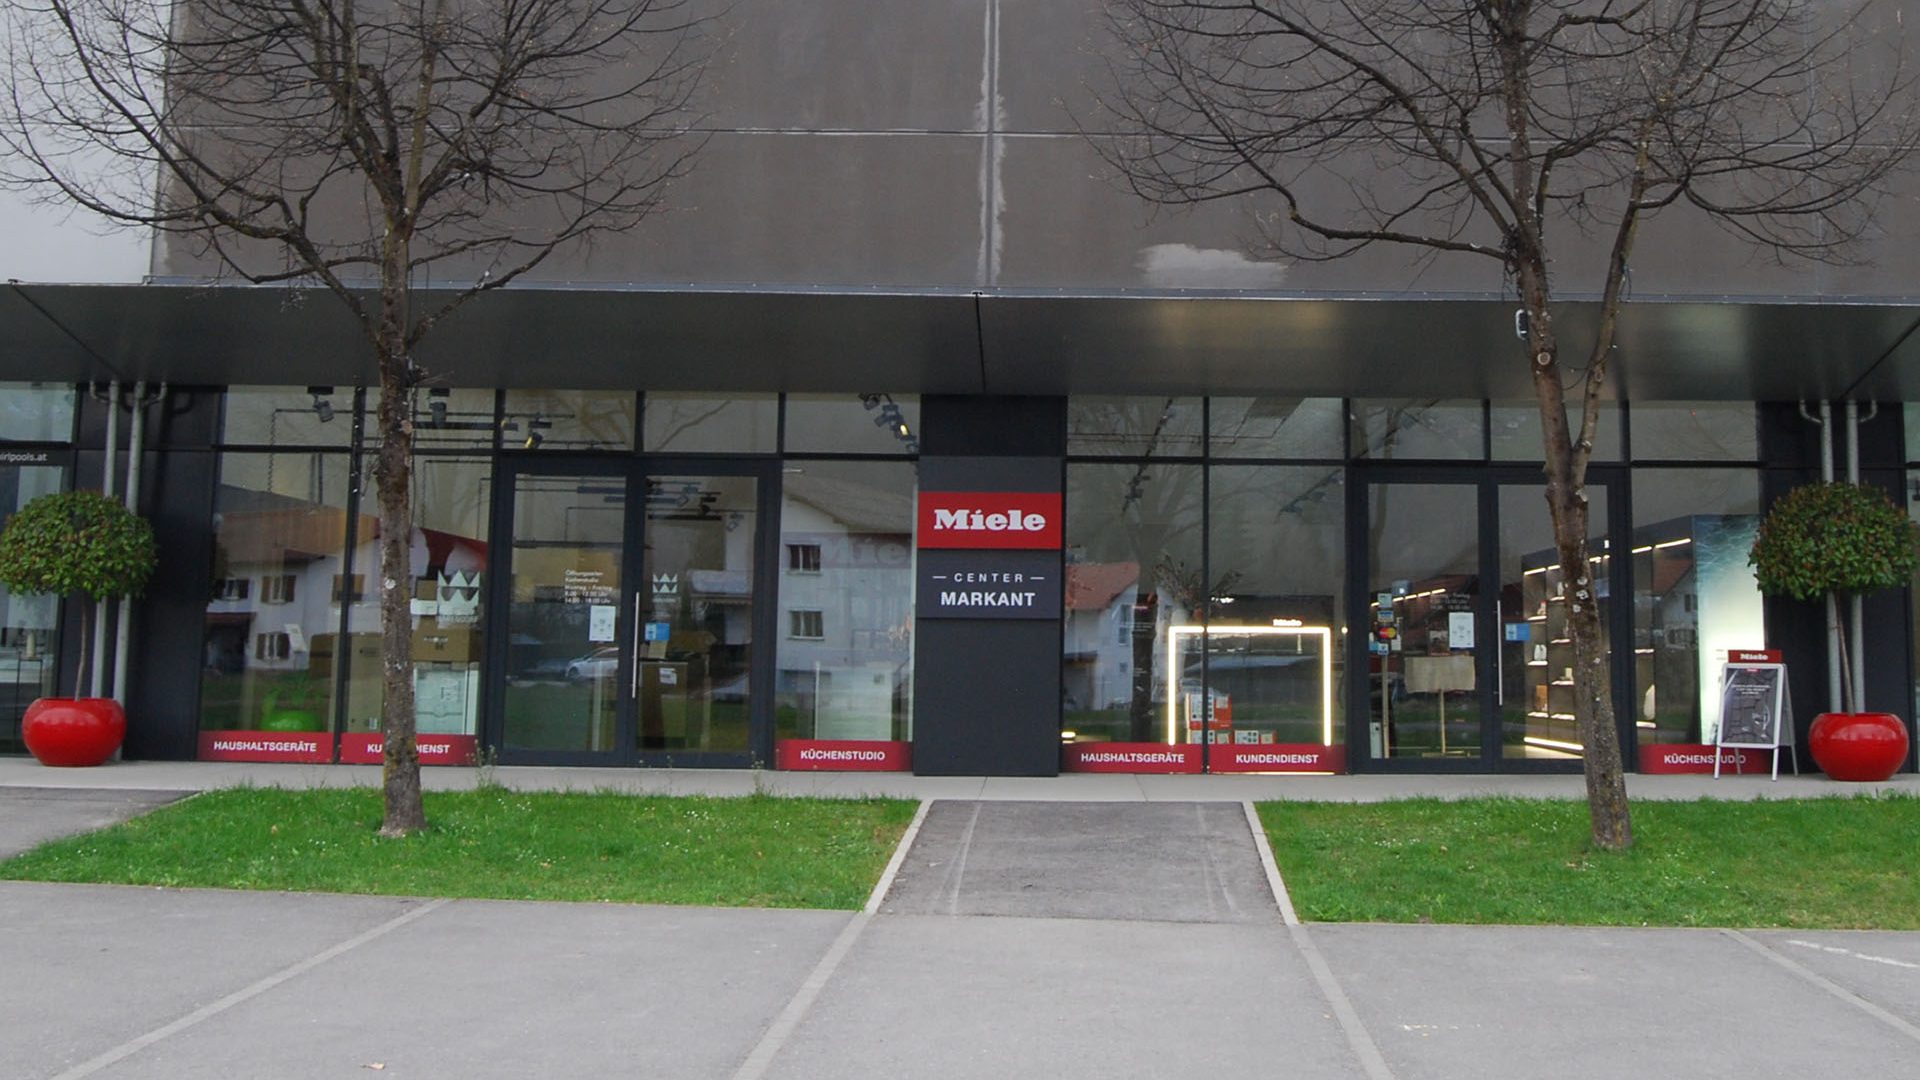 Miele Center Markant in Dornbirn, Vorarlberg